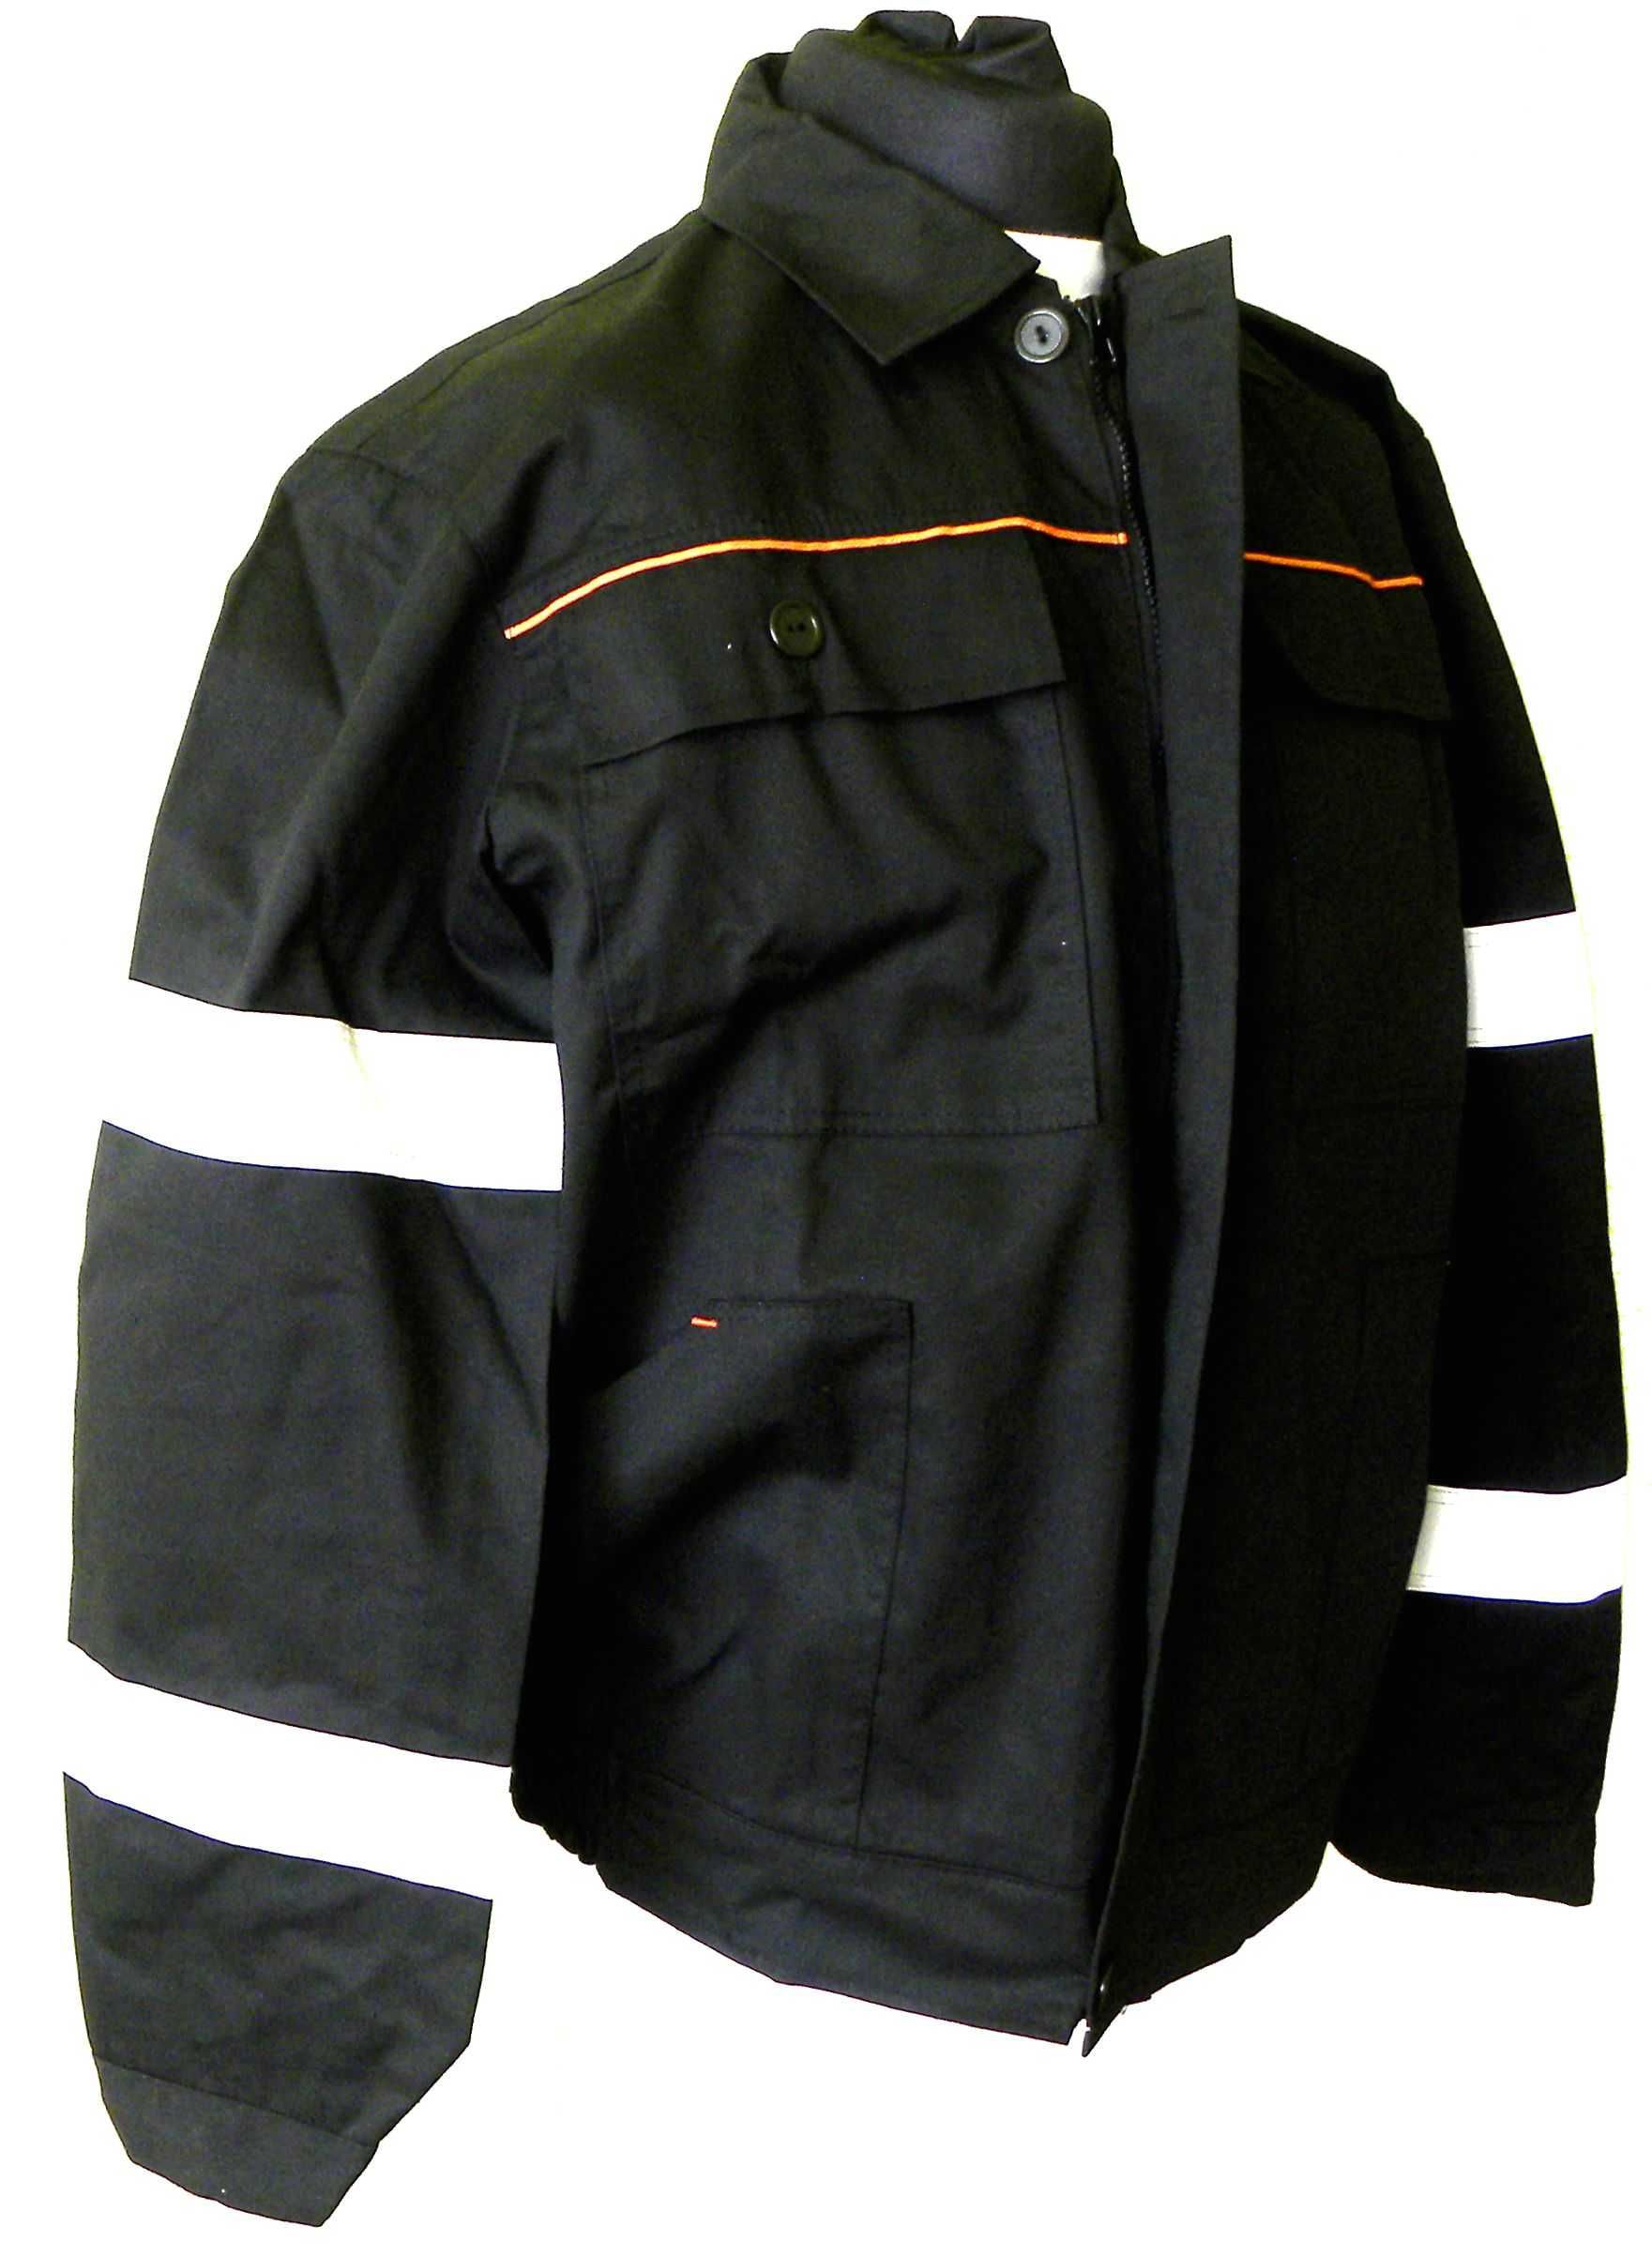 Ubranie typ szwedzki czarne +2x taśmy odblask,  r. XL